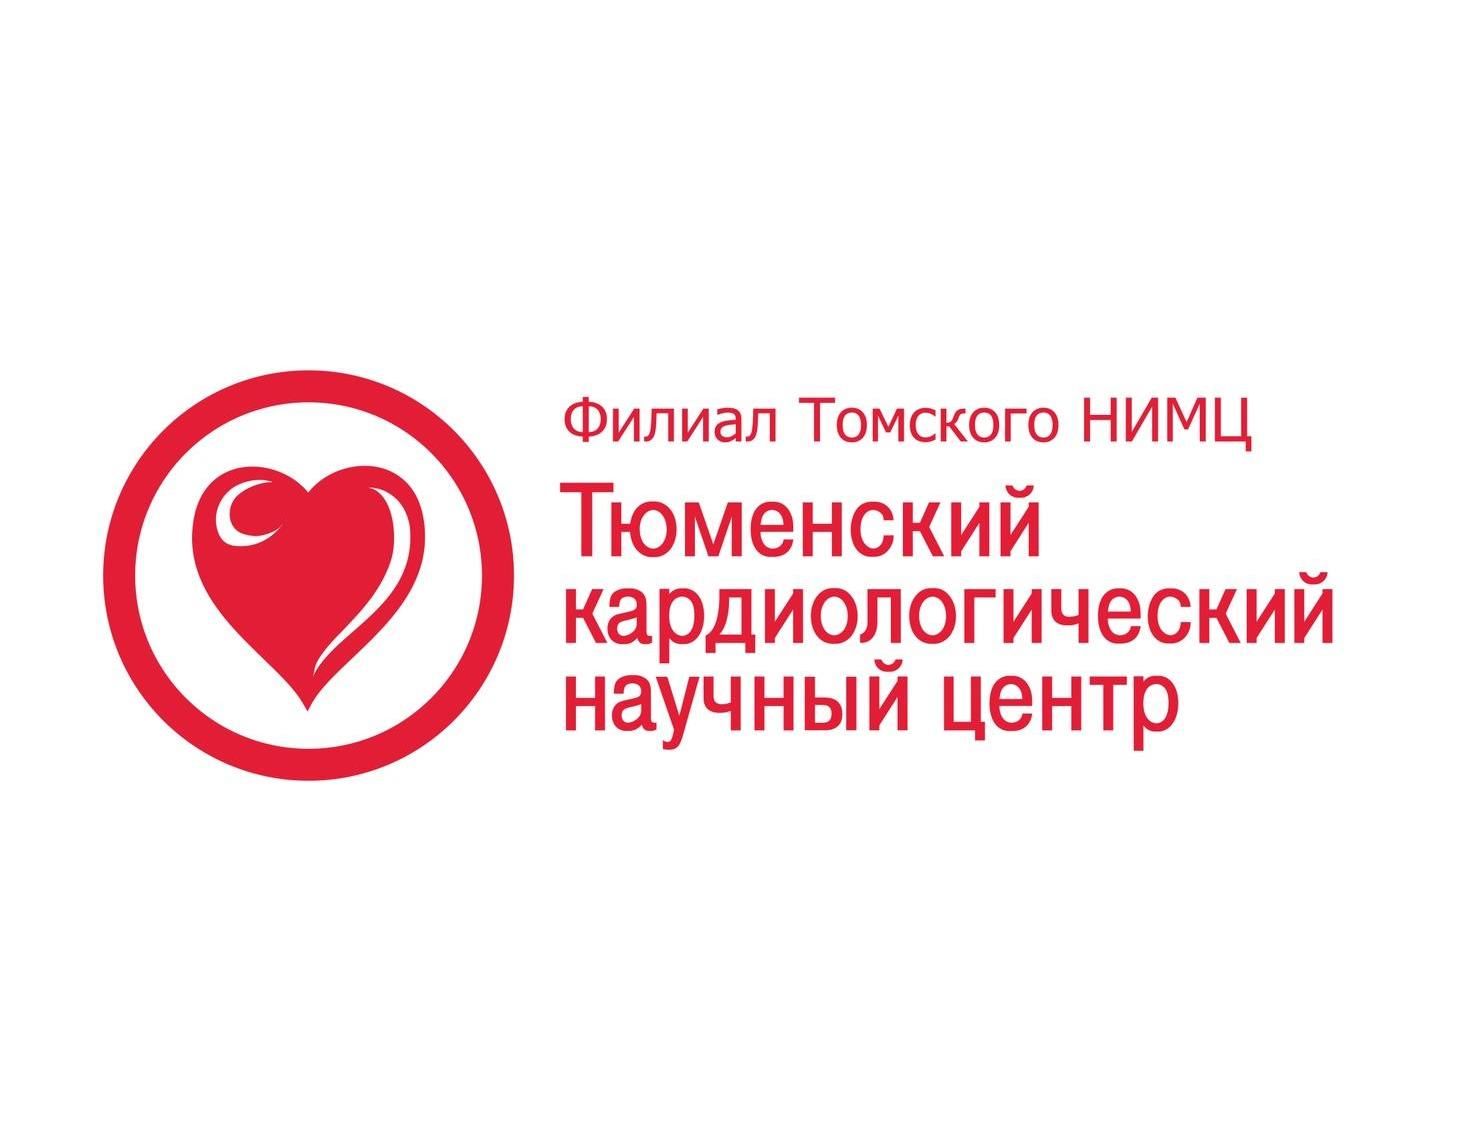 Конференция «Пациент высокого сердечно-сосудистого риска в практике кардиолога и терапевта» - 2008